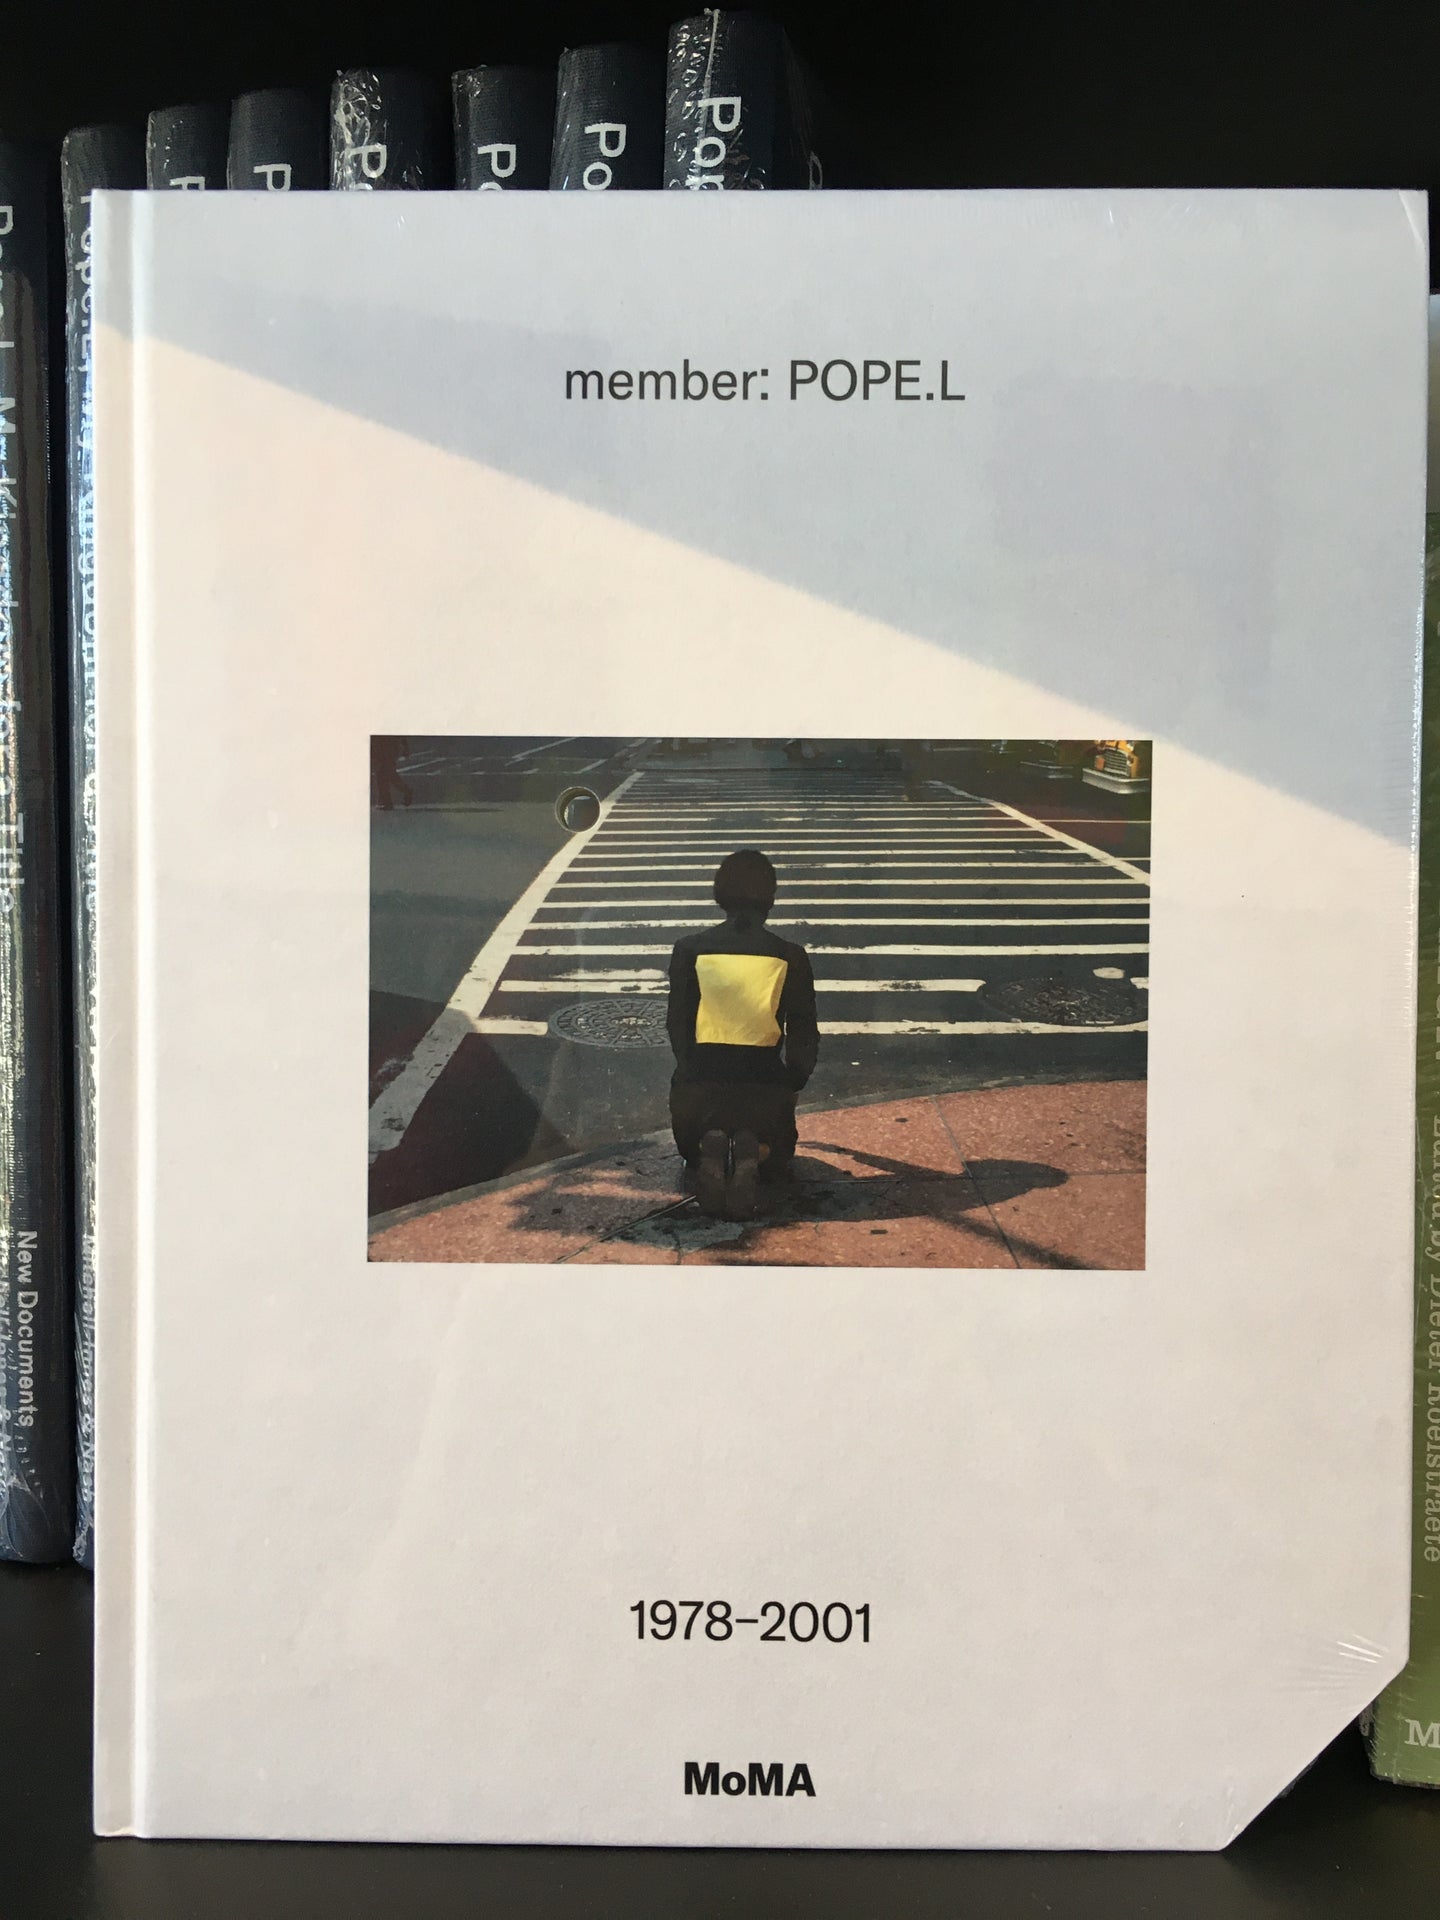 Pope.L: Member